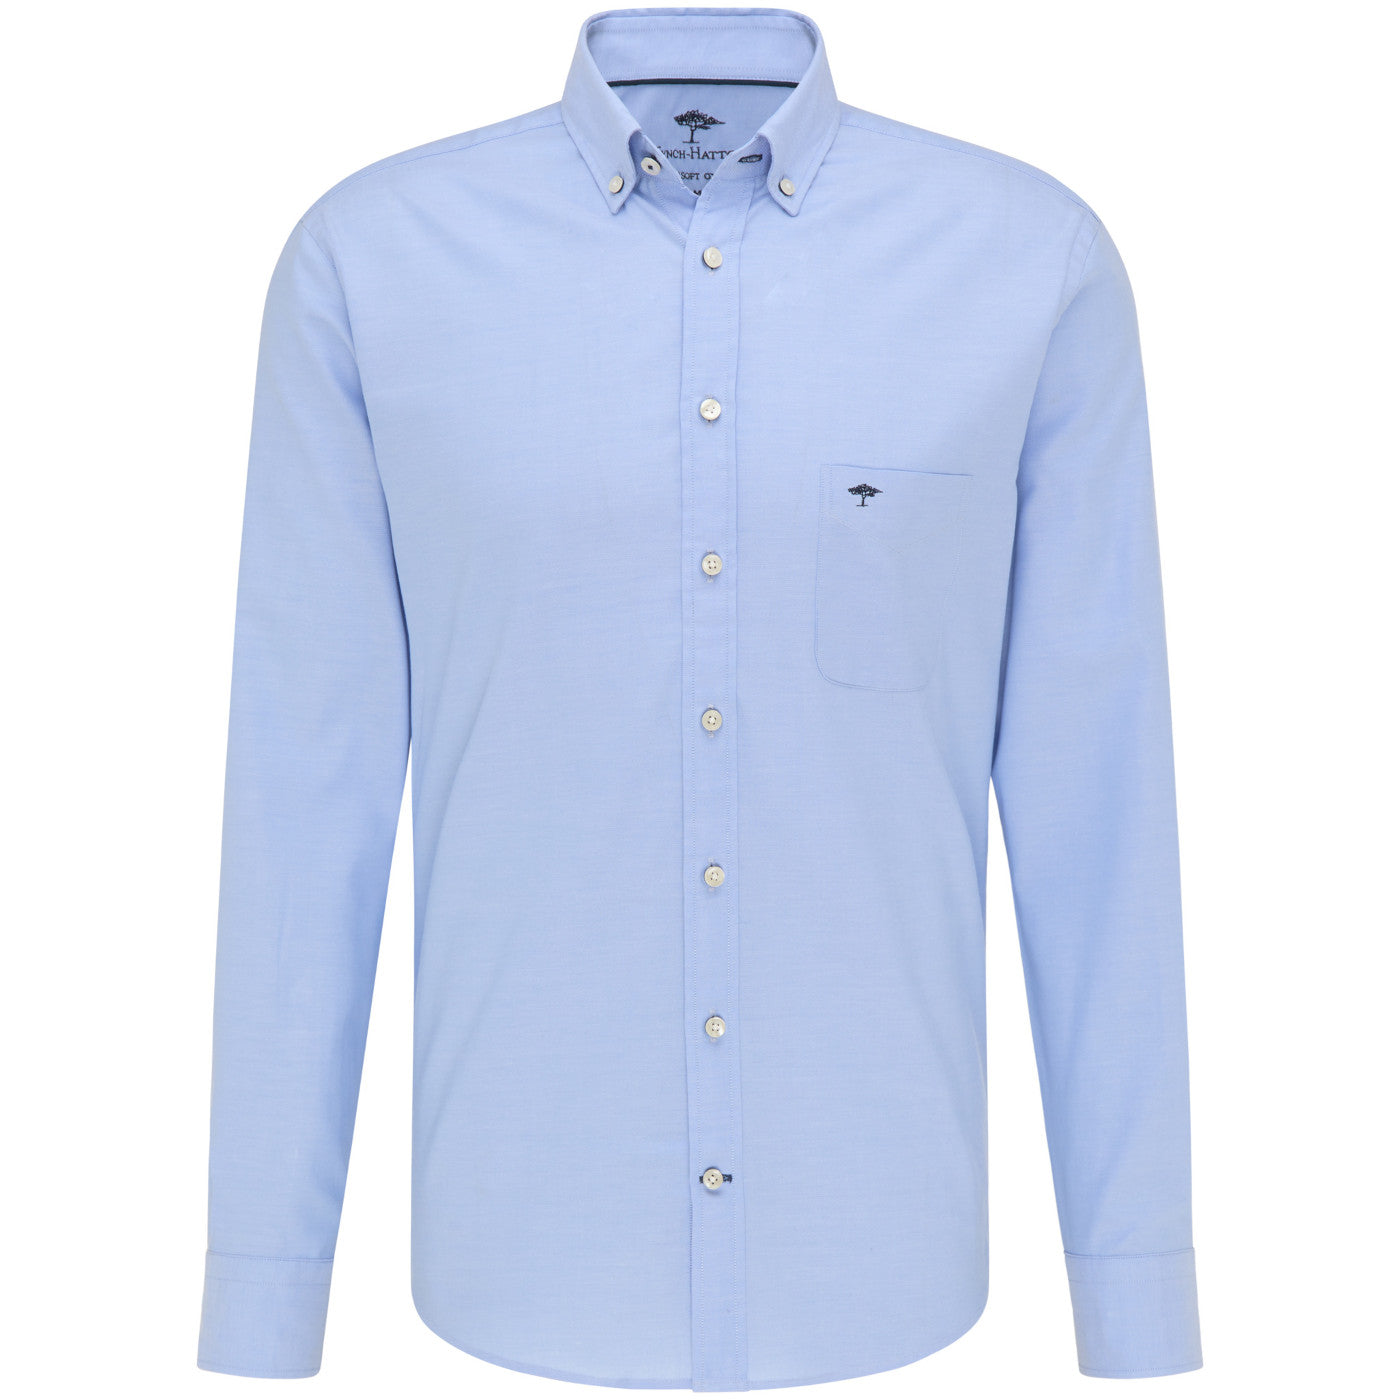 Fynch Hatton 1000 5500 5510 Light Blue Oxford Shirt